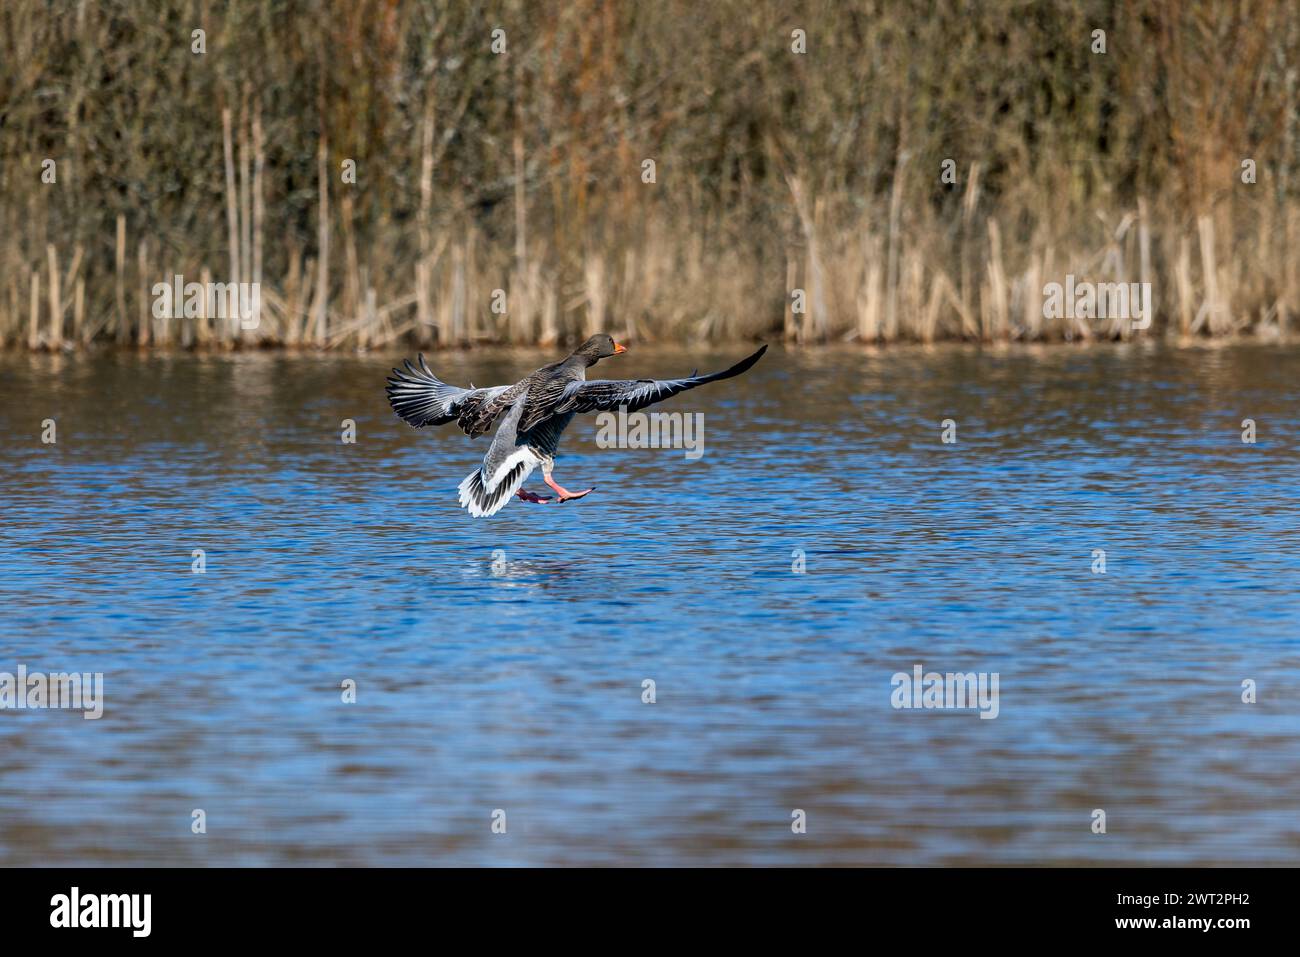 Greylag goose landing on water, Lake Bielawa Stock Photo